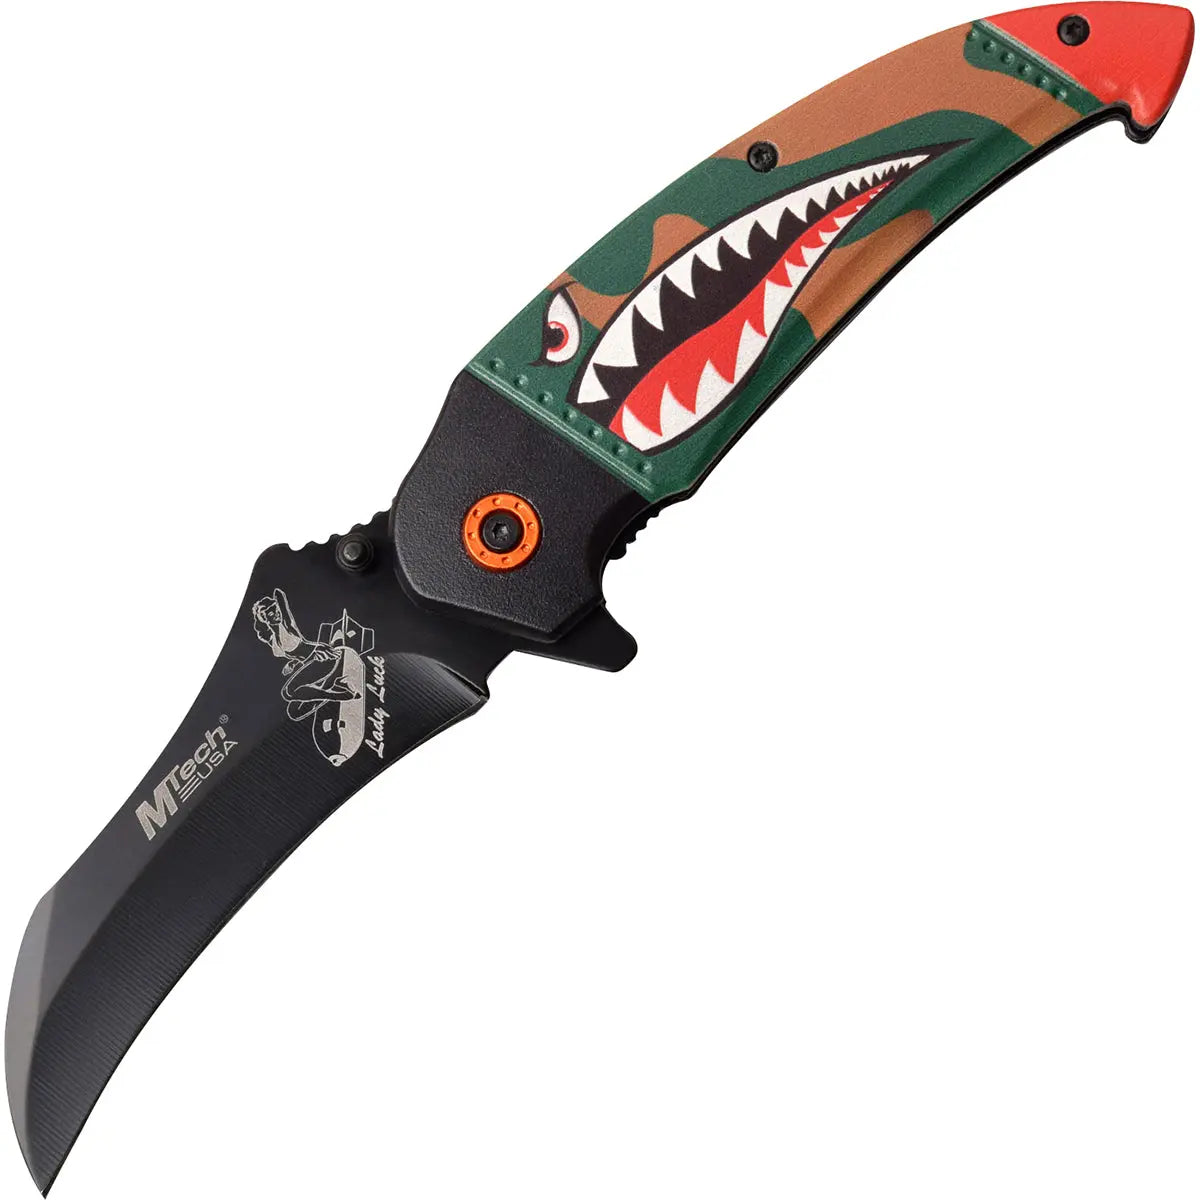 MTech USA Linerlock Spring Assisted Folding Knife, Shark, Green/Camo, MT-A1130GN M-Tech